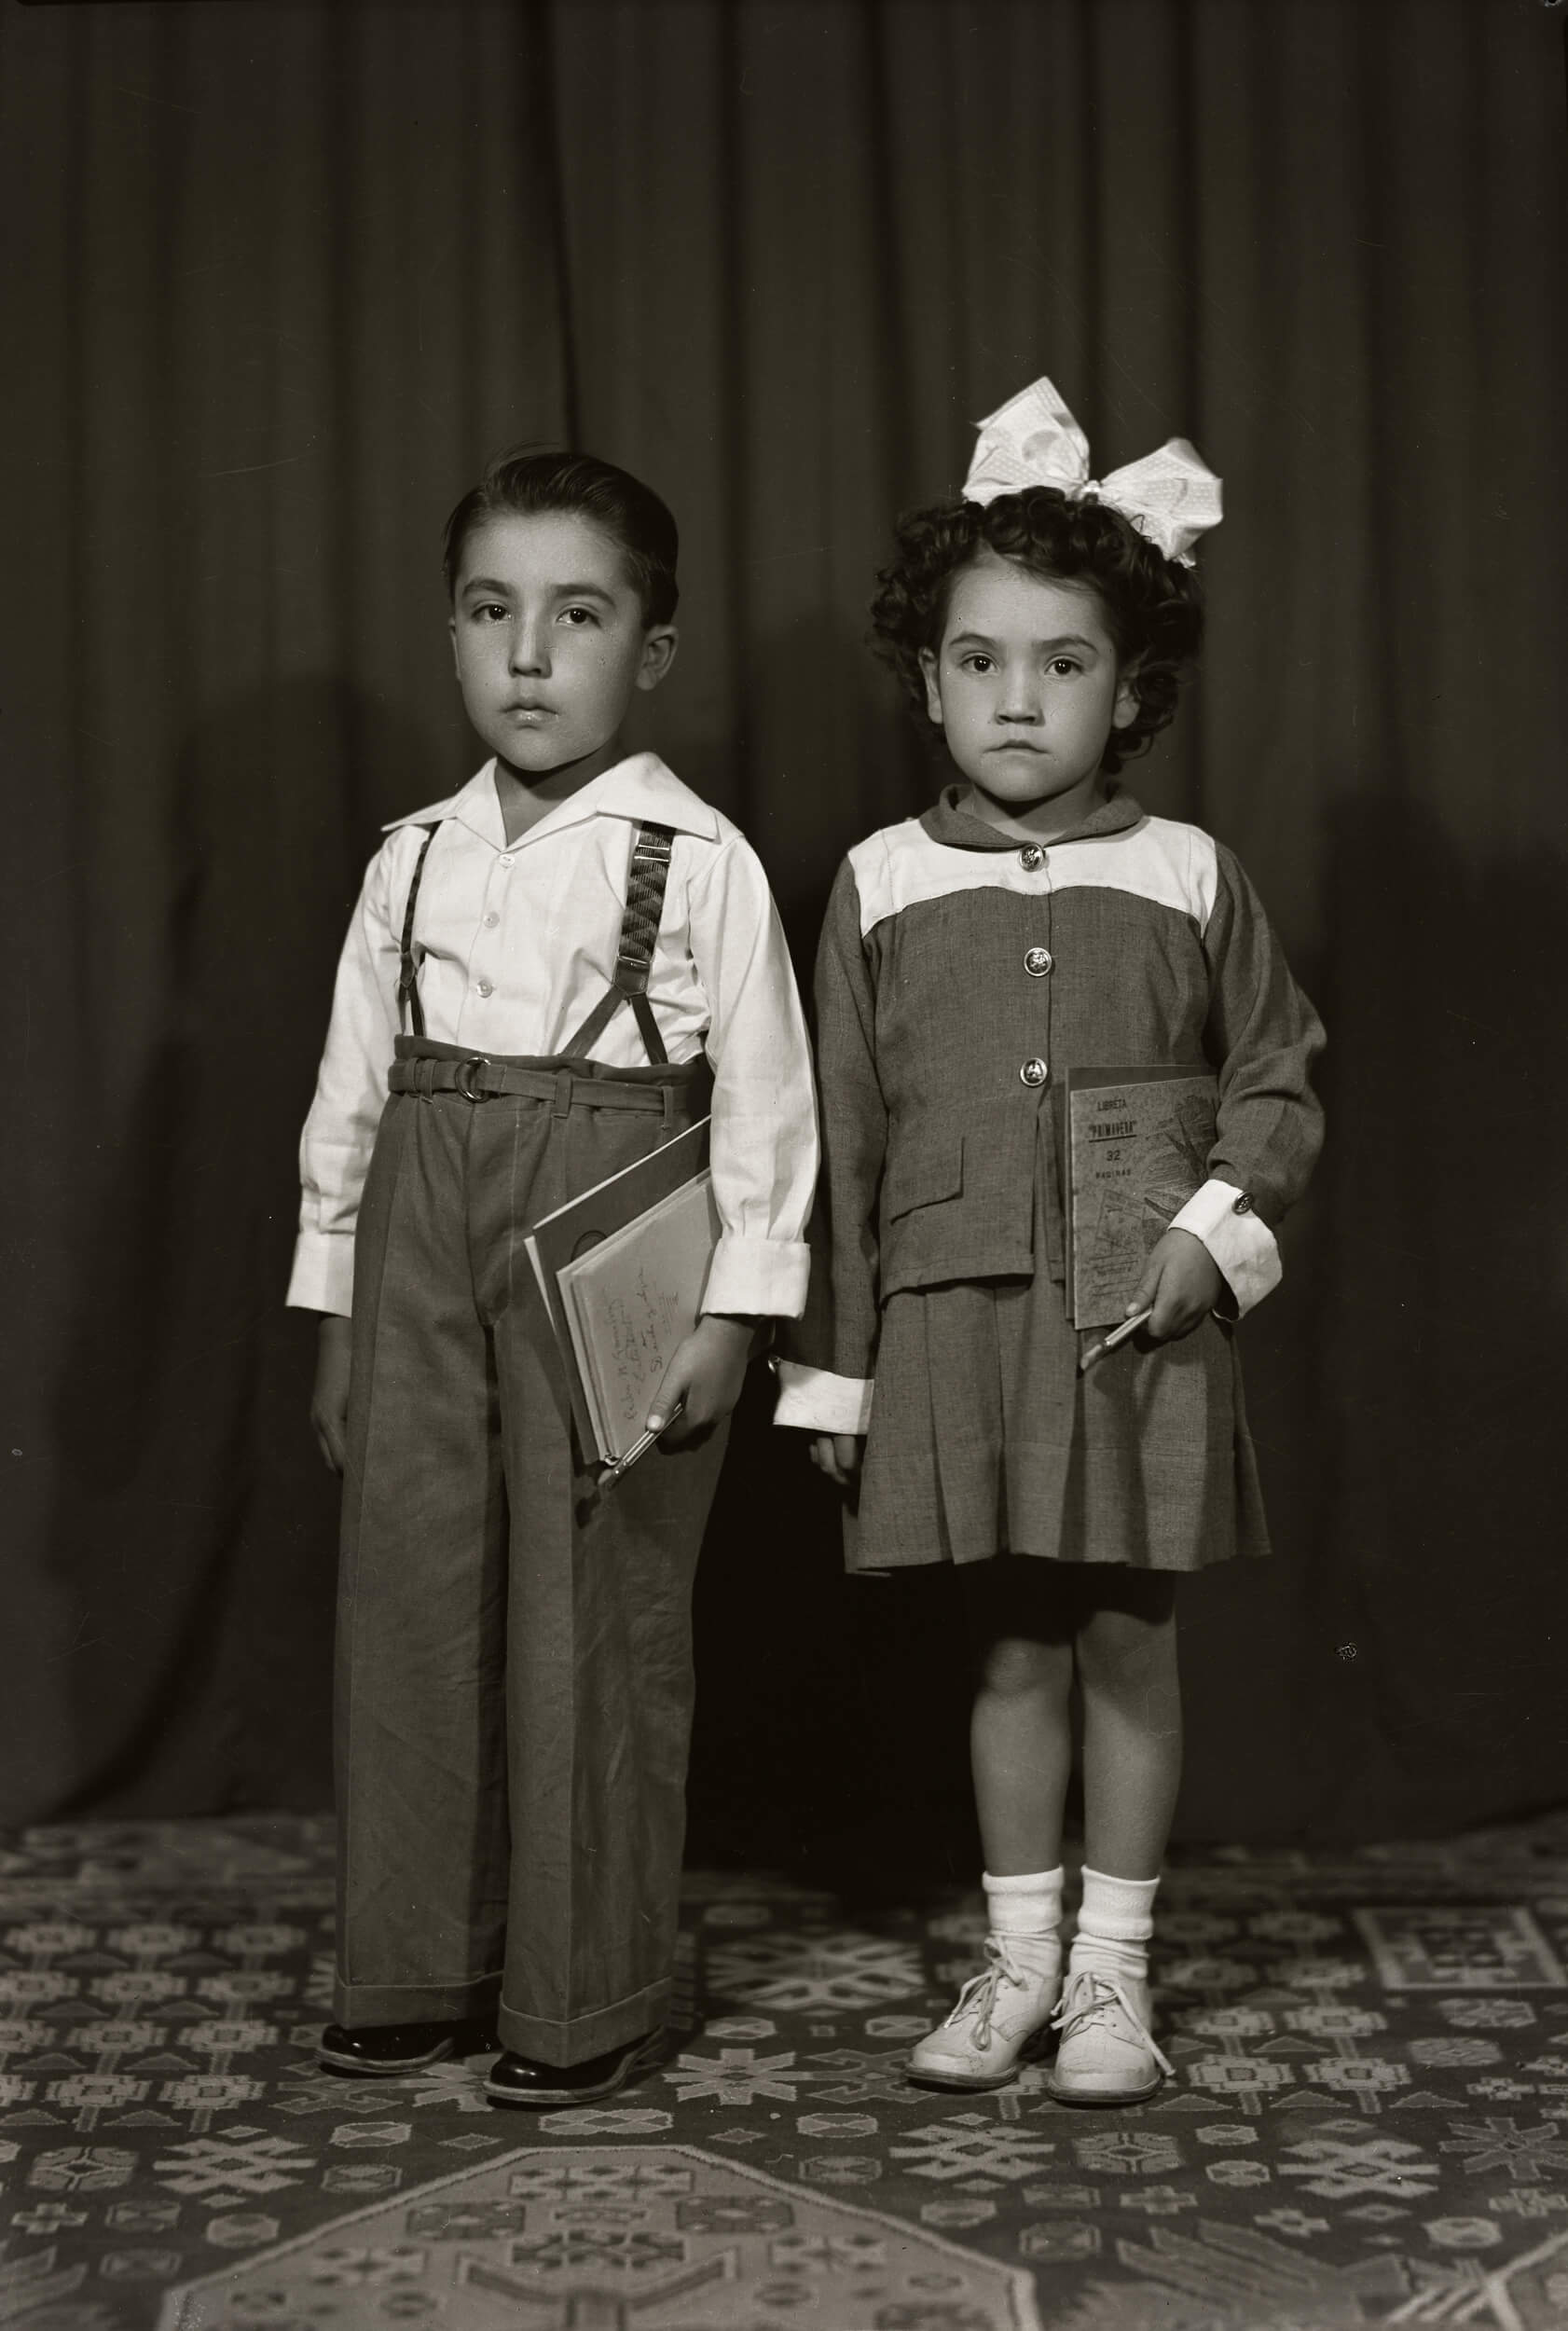 25152. Retrato de dos hermanitos de cuerpo entero con útiles escolares. La niña porta una "Libreta Primavera de 32 páginas", entre ellos, en estudio